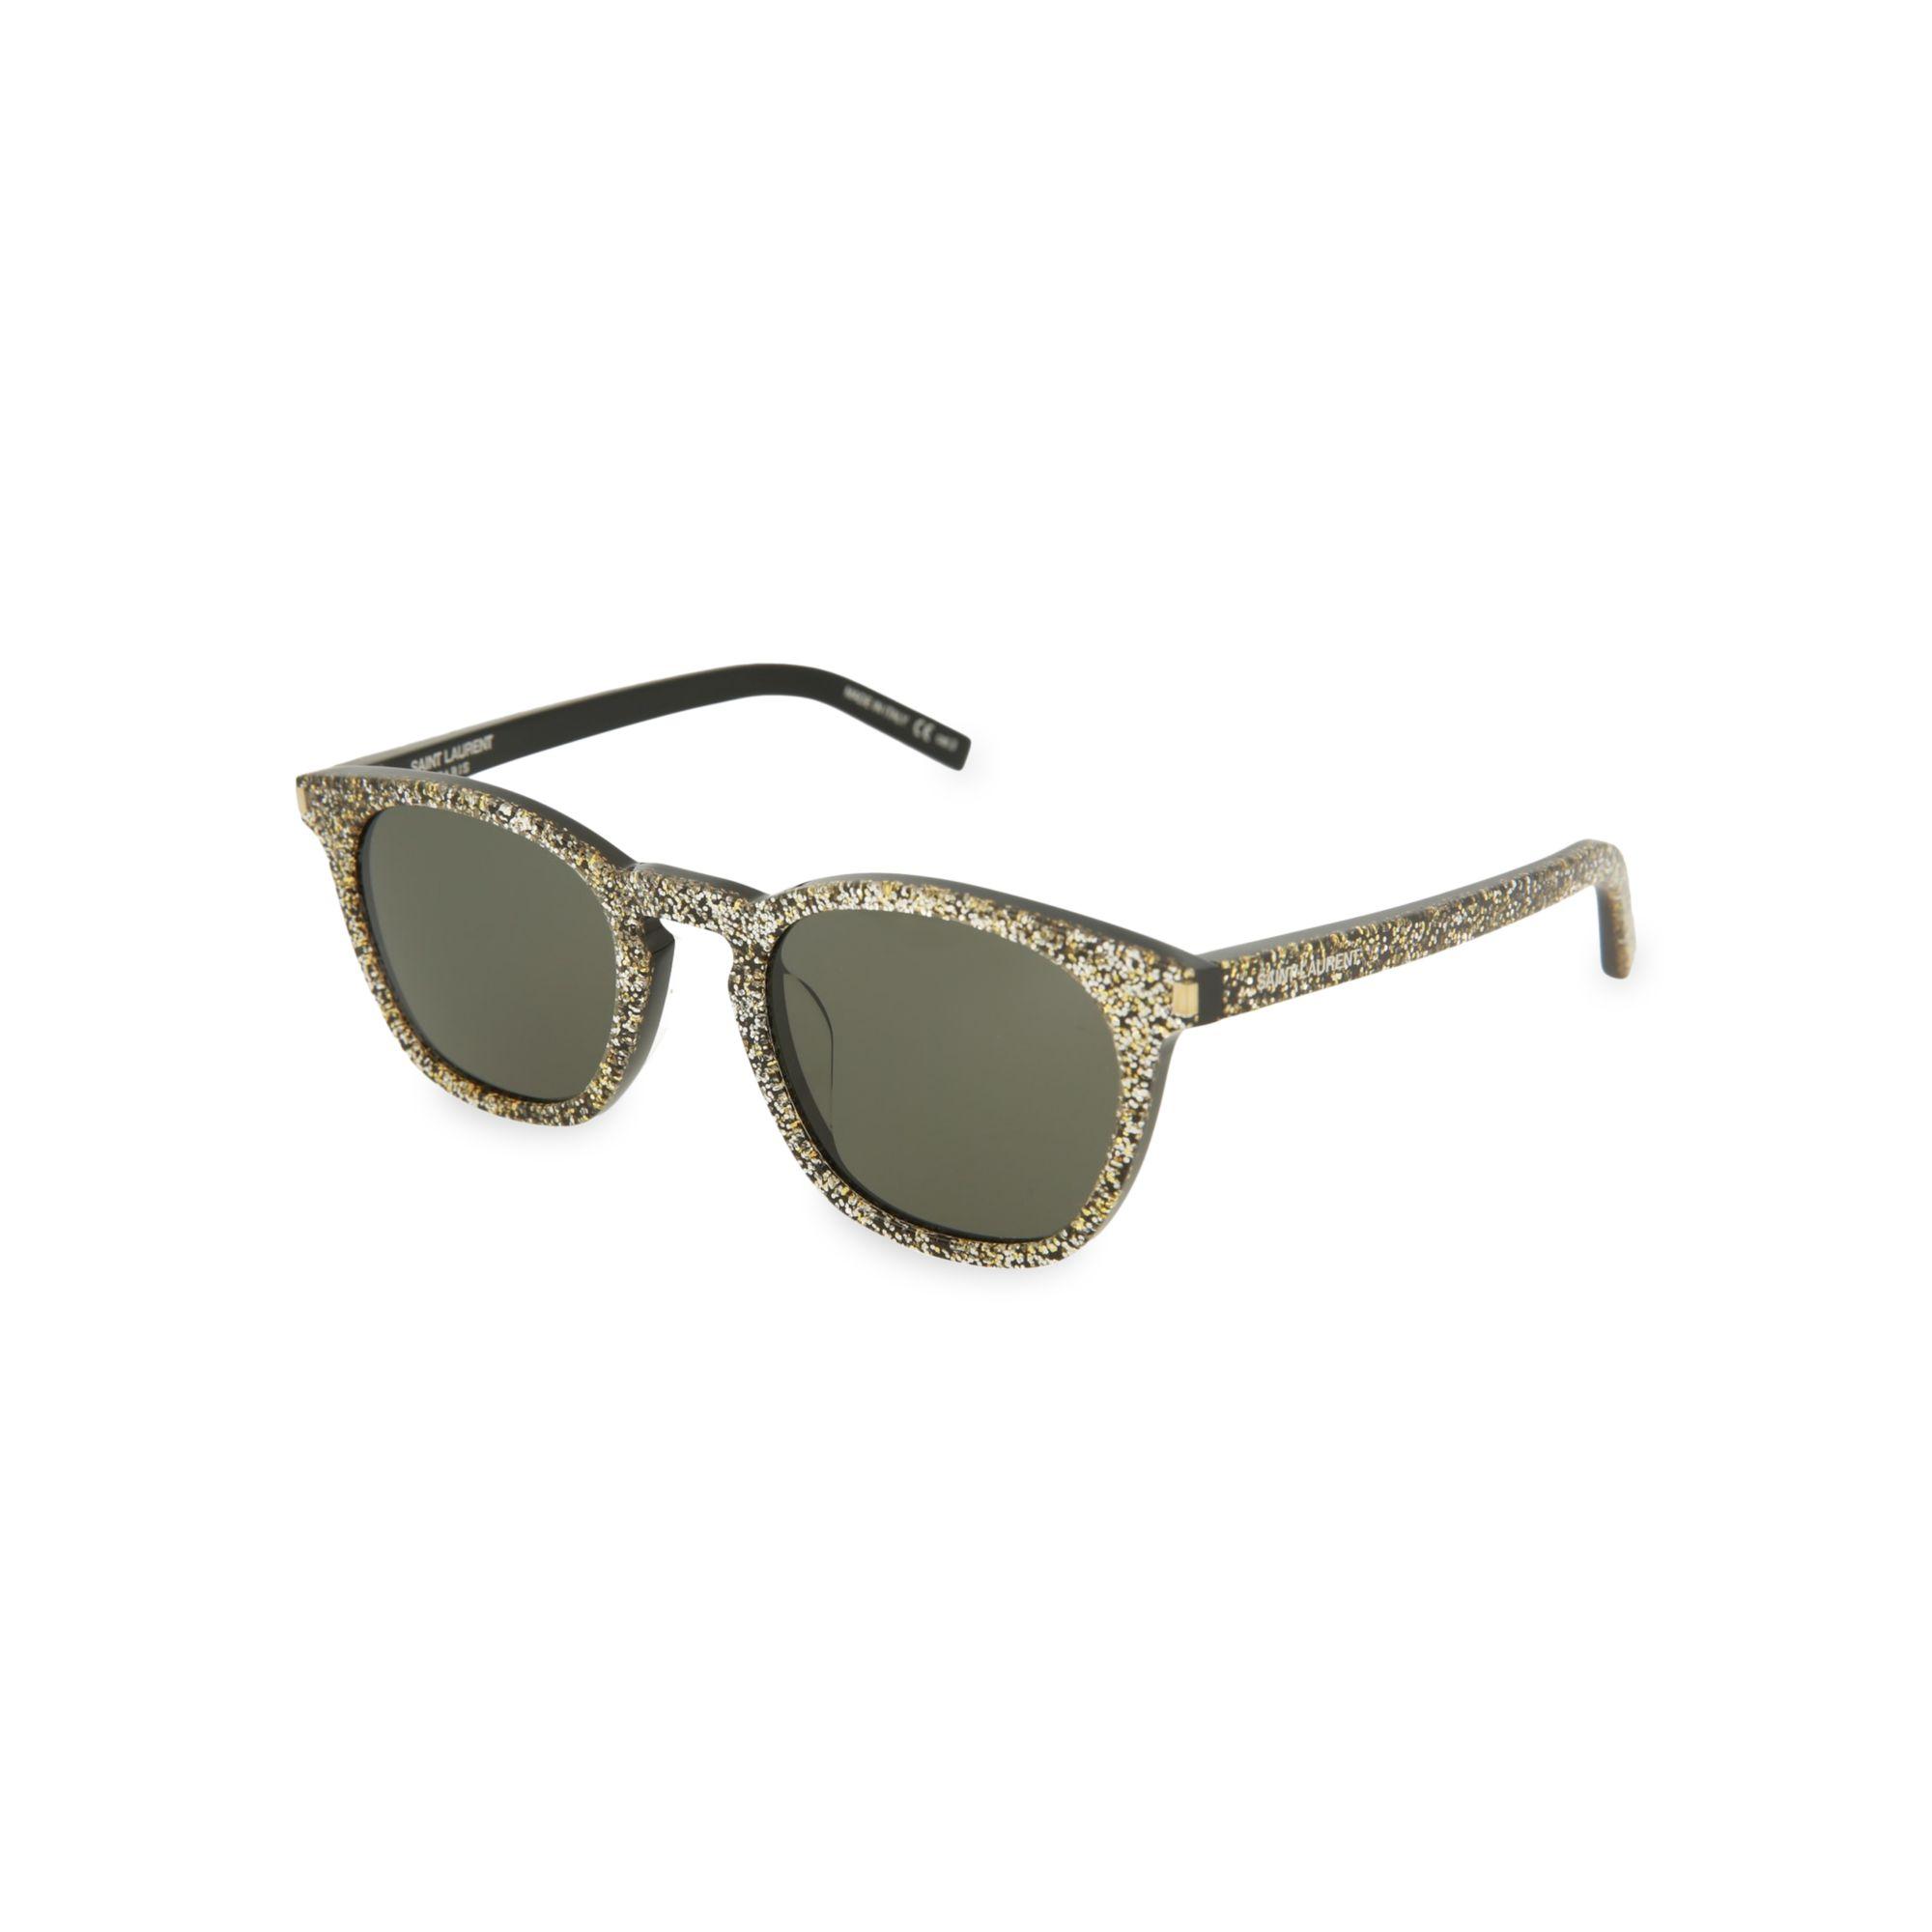 Womens Mens Accessories Mens Sunglasses Saint Laurent Unisex Sl436 49mm Sunglasses in Gold Metallic 